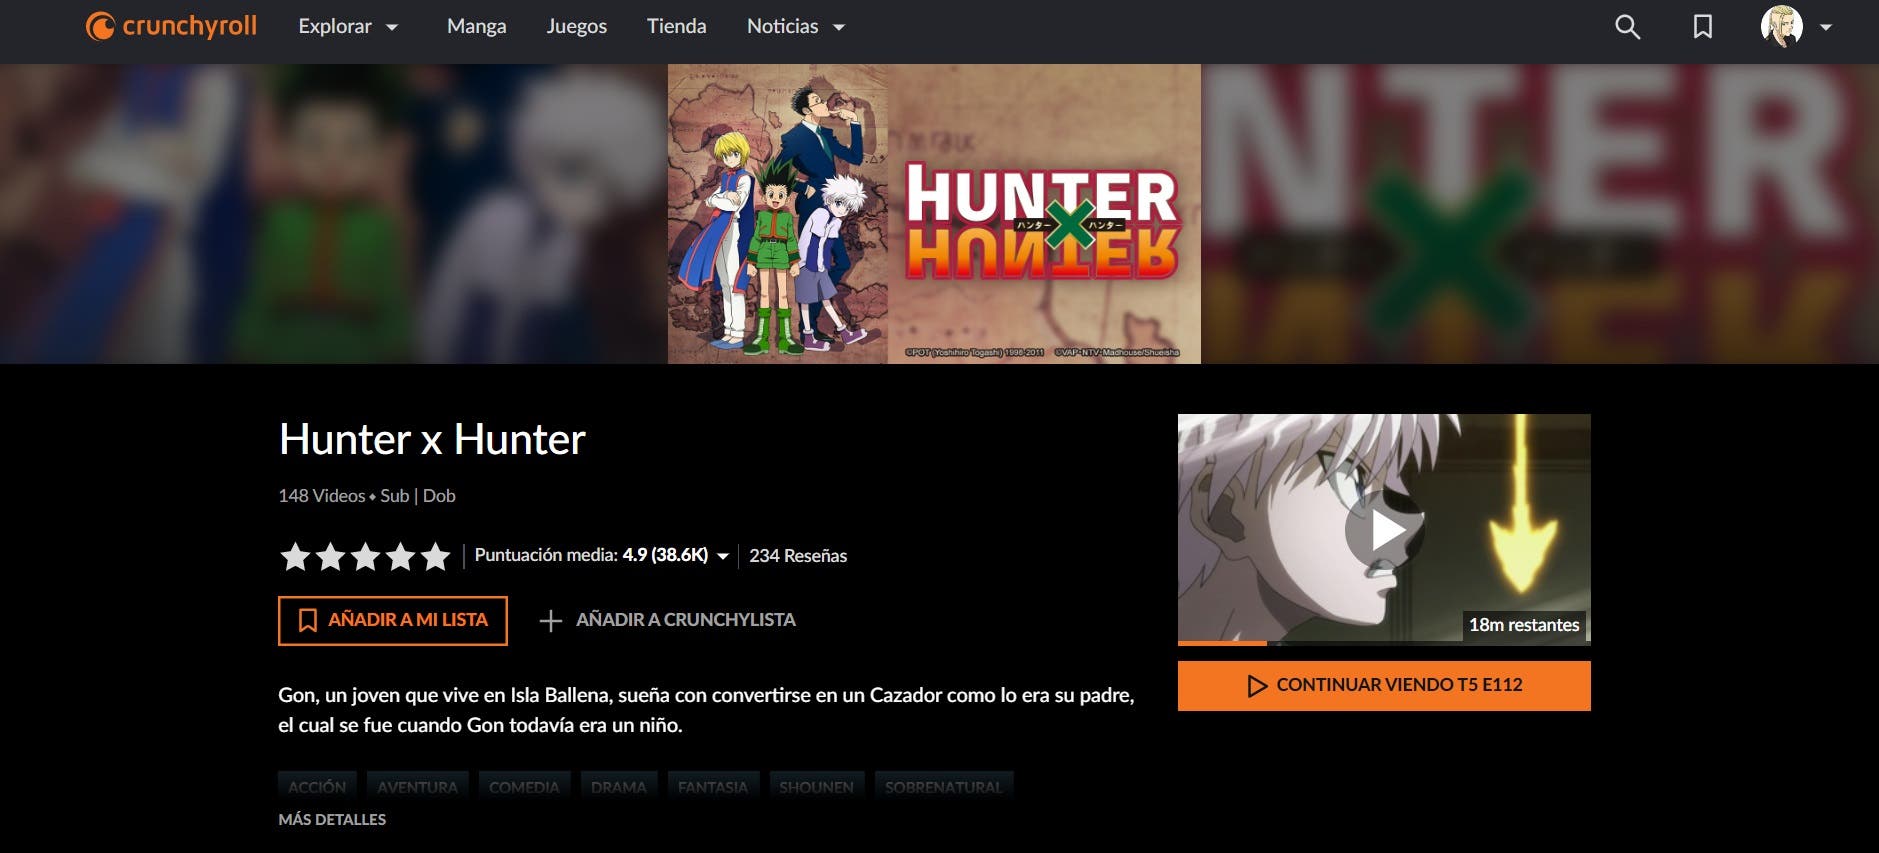 Dónde puedo ver Hunter x Hunter en línea en casa? - Quora